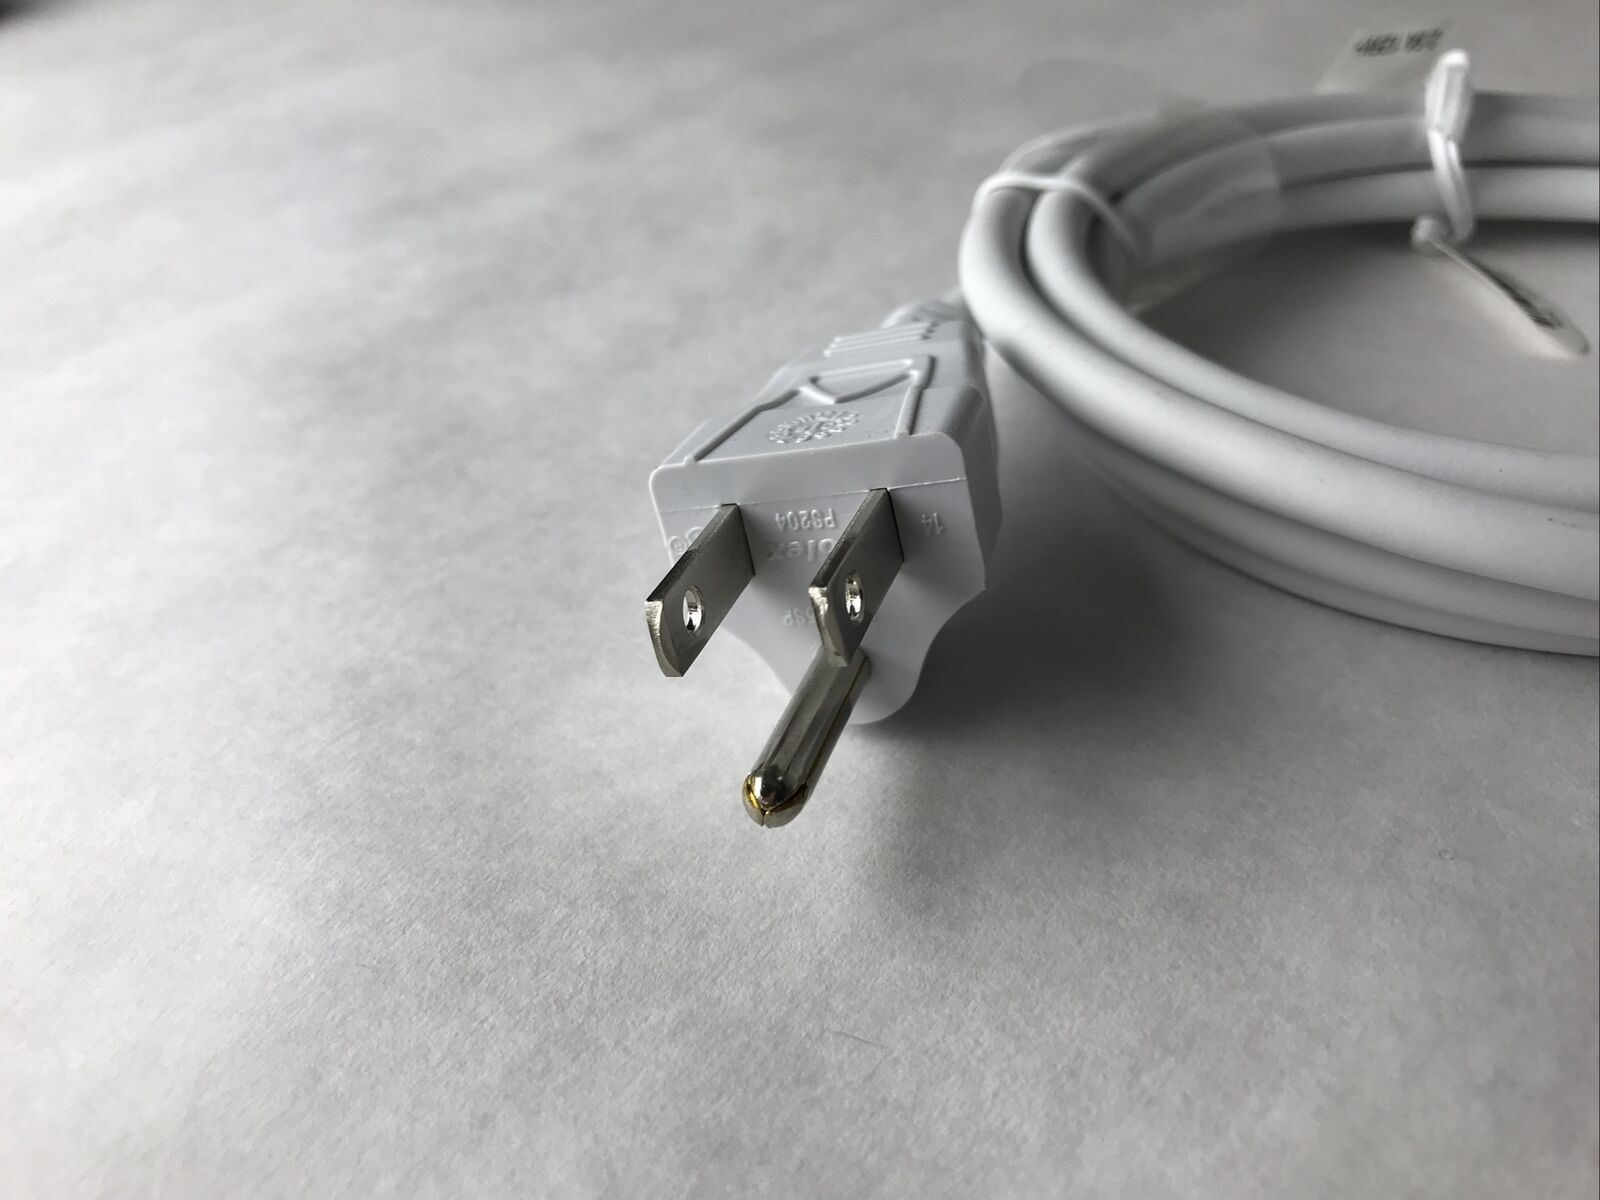 Apple Macbook Power Adapter Cord 2.5A 125V APC7Q